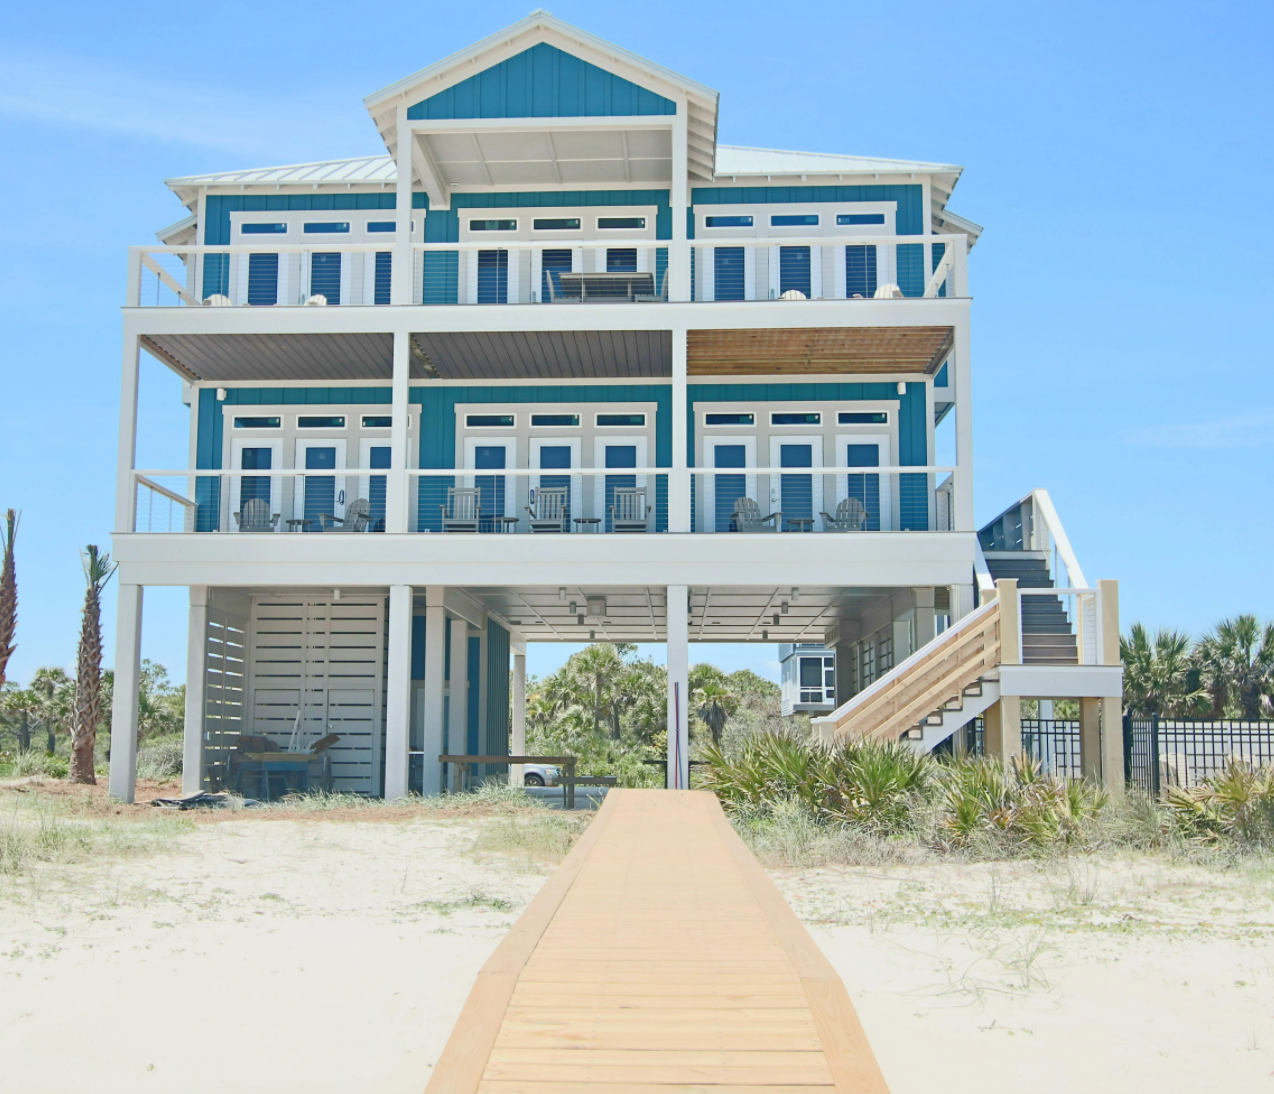 House on the beach.